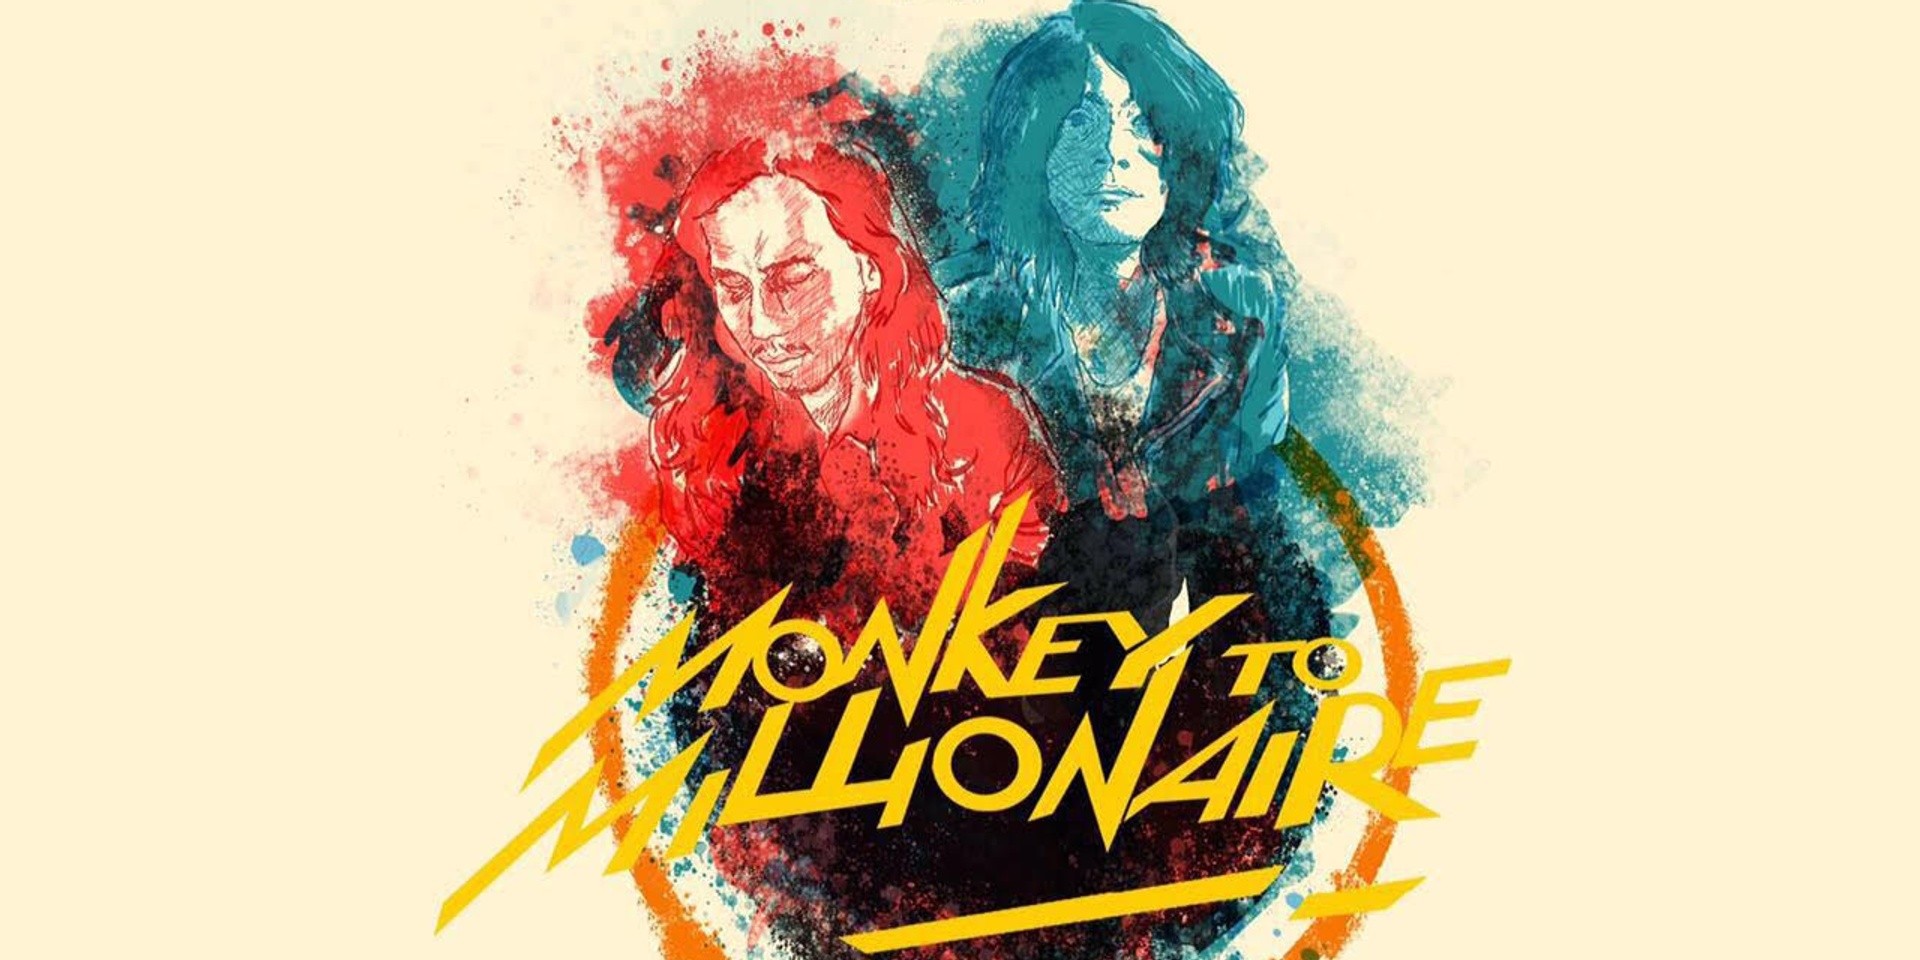 Explore the darker side of Monkey to Millionaire through their latest album 'Tanpa Koma'